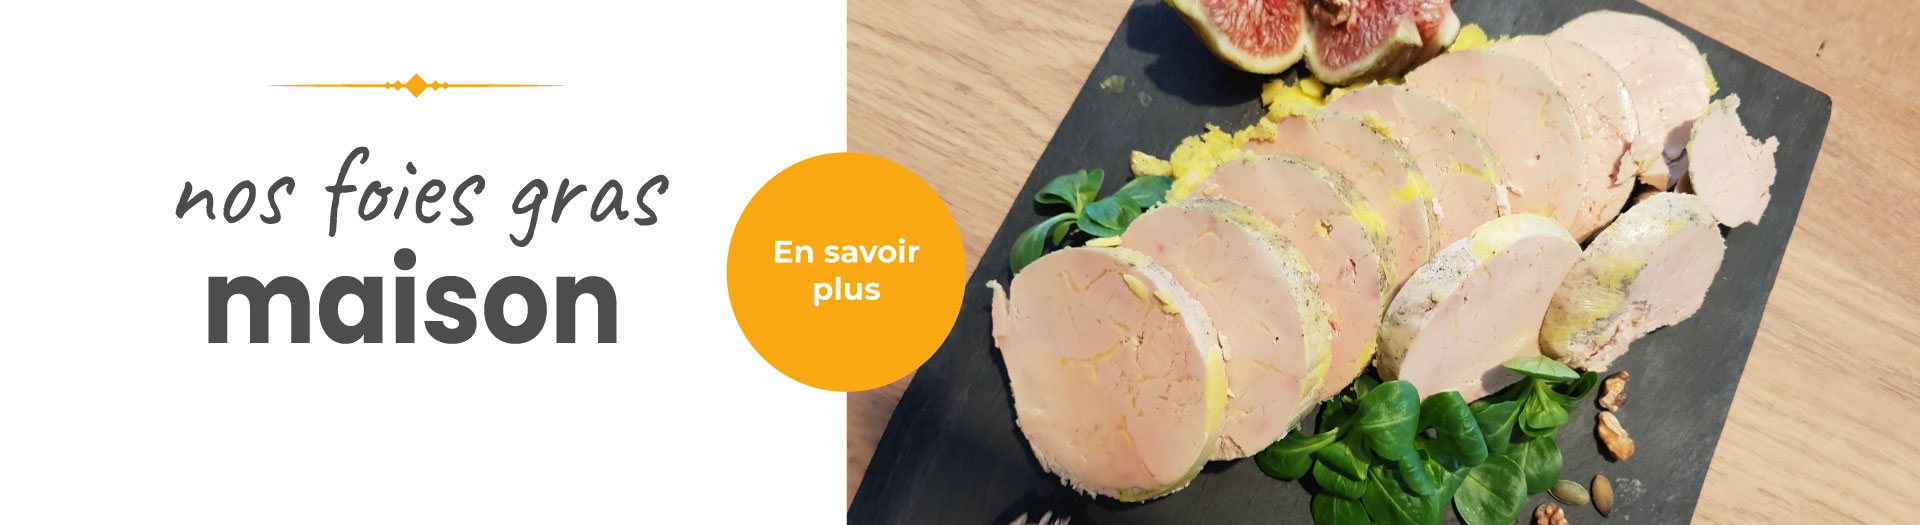 Banniere-foies-gras-maison